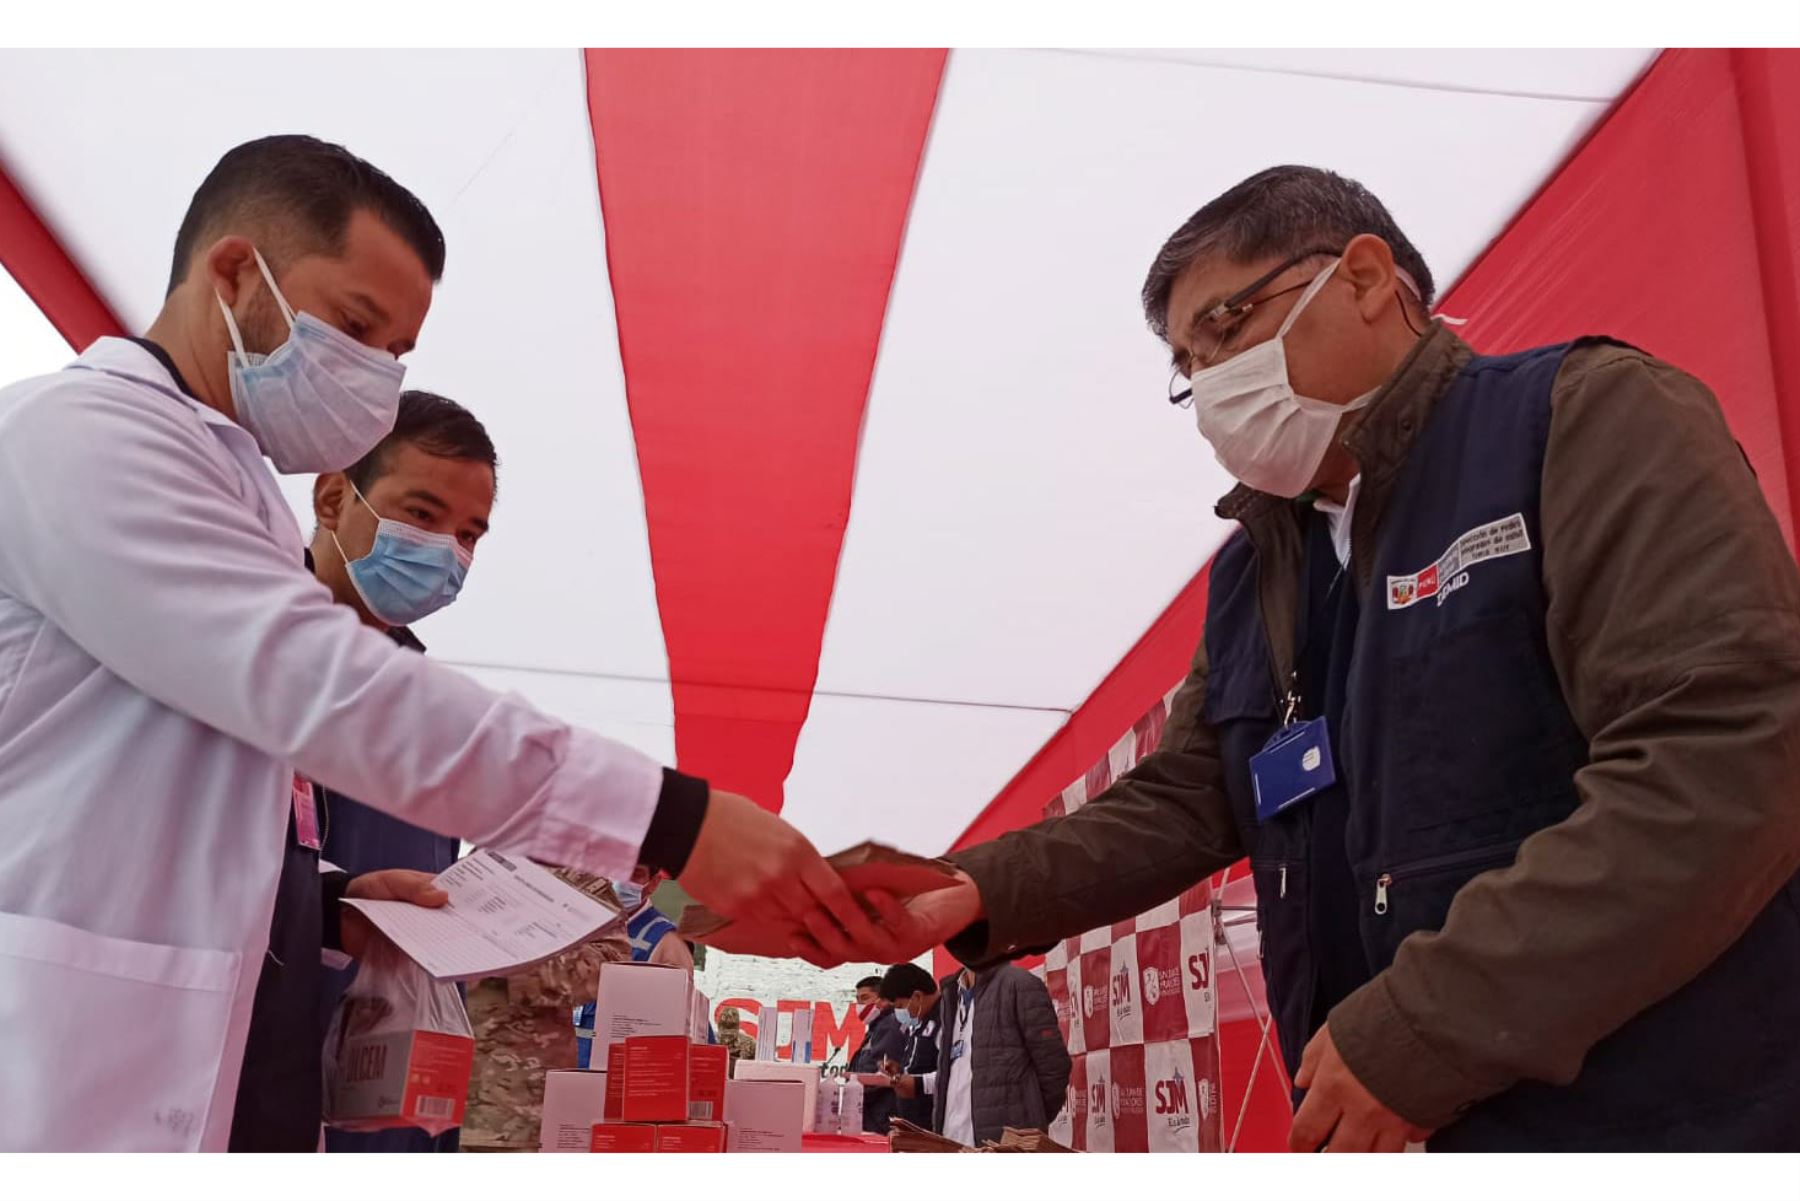 La Dirección Integral de Salud (DIRIS) Lima Sur visitó 225 viviendas para realizar pruebas de descarte rápidas y/o molecular de covid-19 a personas consideradas de “alto riesgo”, y de tratamiento oportuno a quienes dieron positivo al nuevo coronavirus. ANDINA/Minsa